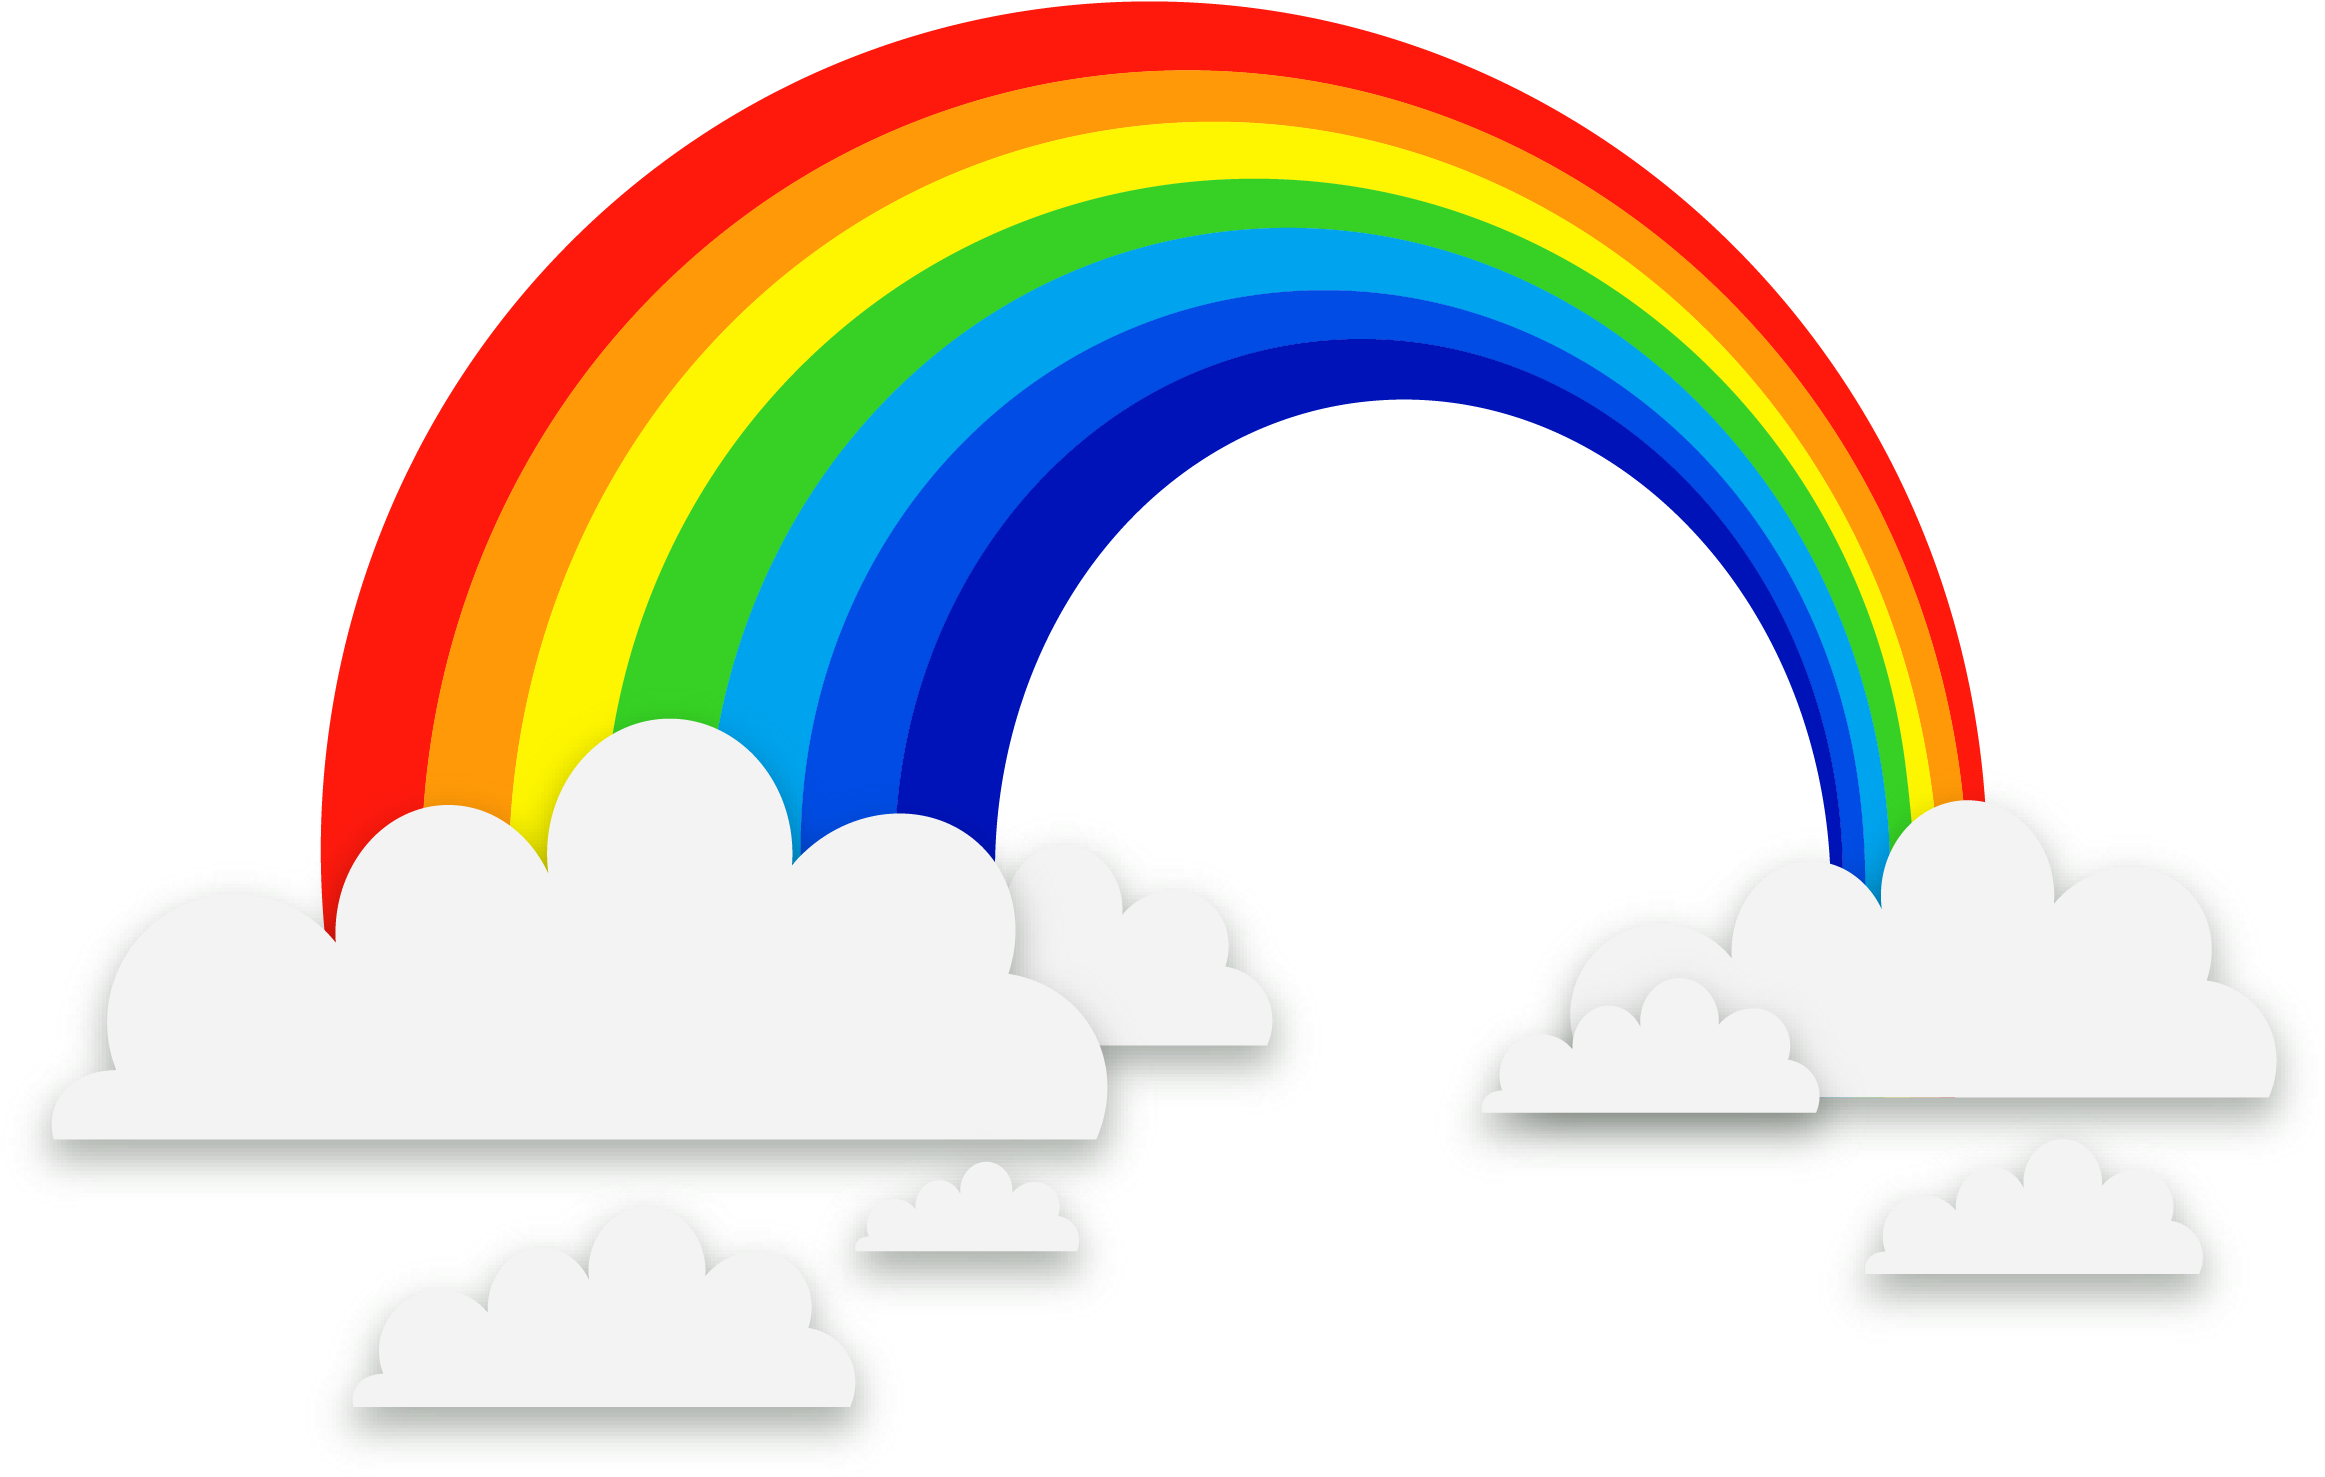 Rainbow Euclidean Vector - Clouds And Rainbow Clipart (2340x1484)